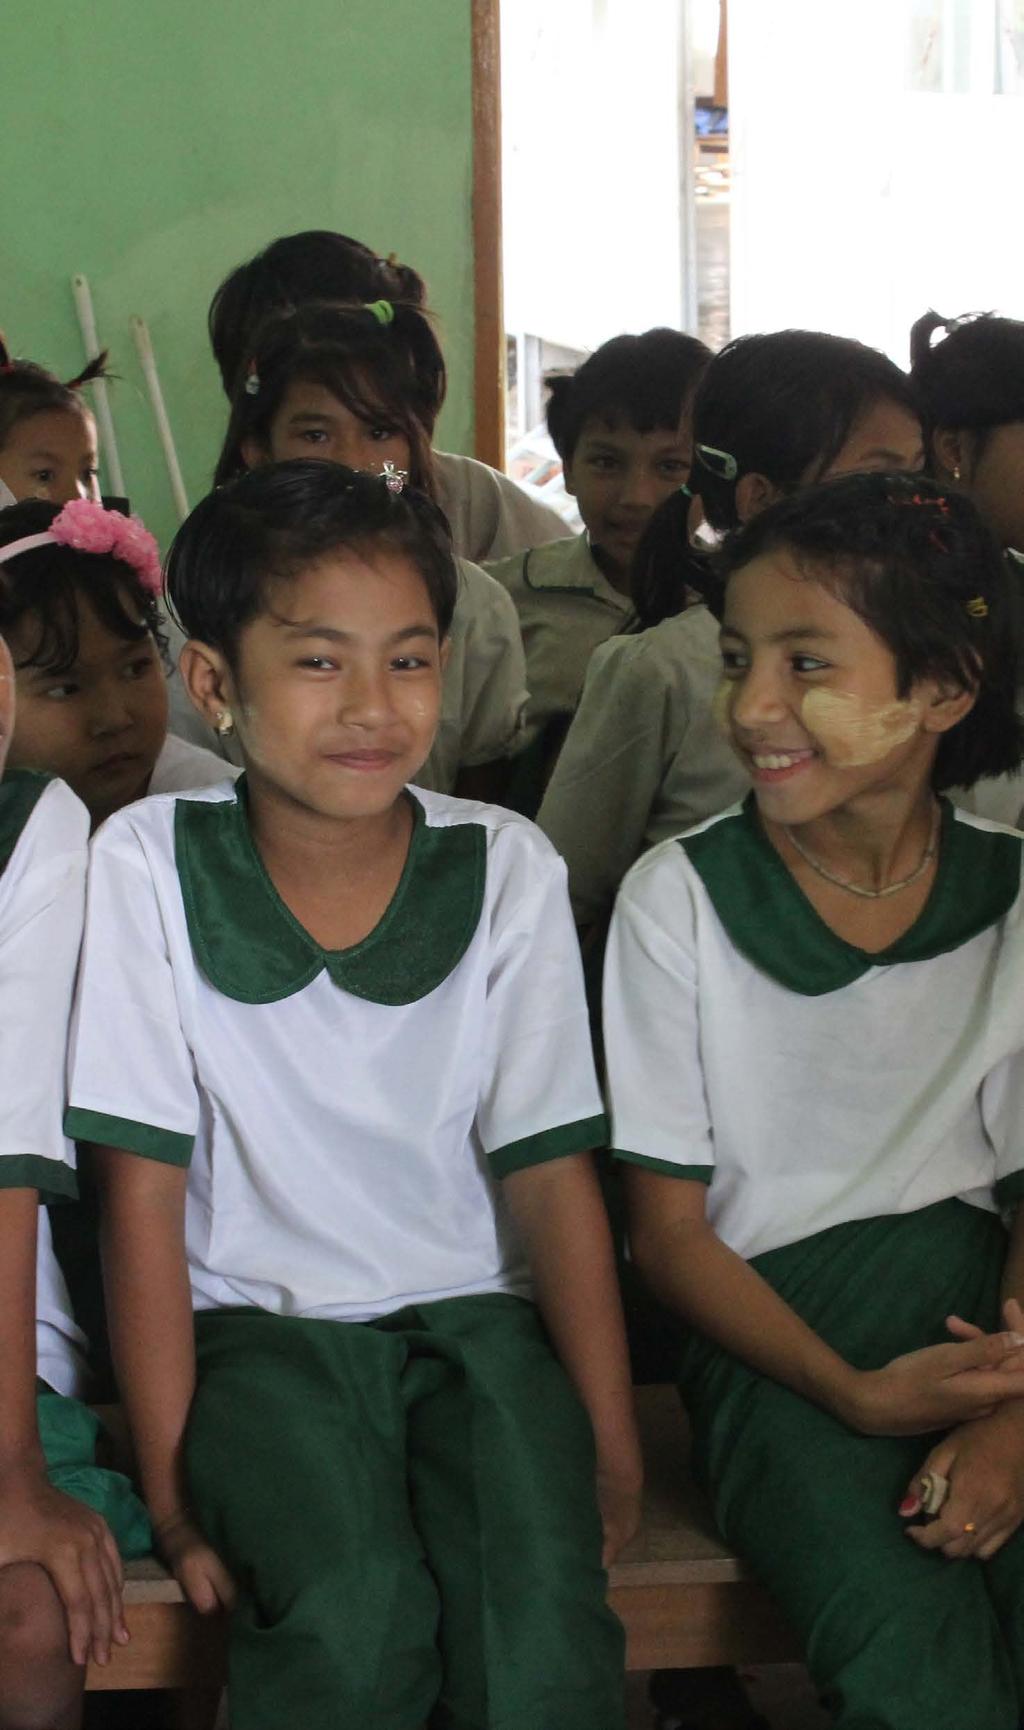 SHWE HLA SEIN: ŠKOLA DO DEŠTĚ Shwe Hla Sein (Myanmar) chodí do šesté třídy základní školy. Má pět sourozenců, tři z nich navštěvují stejnou školu jak ona.